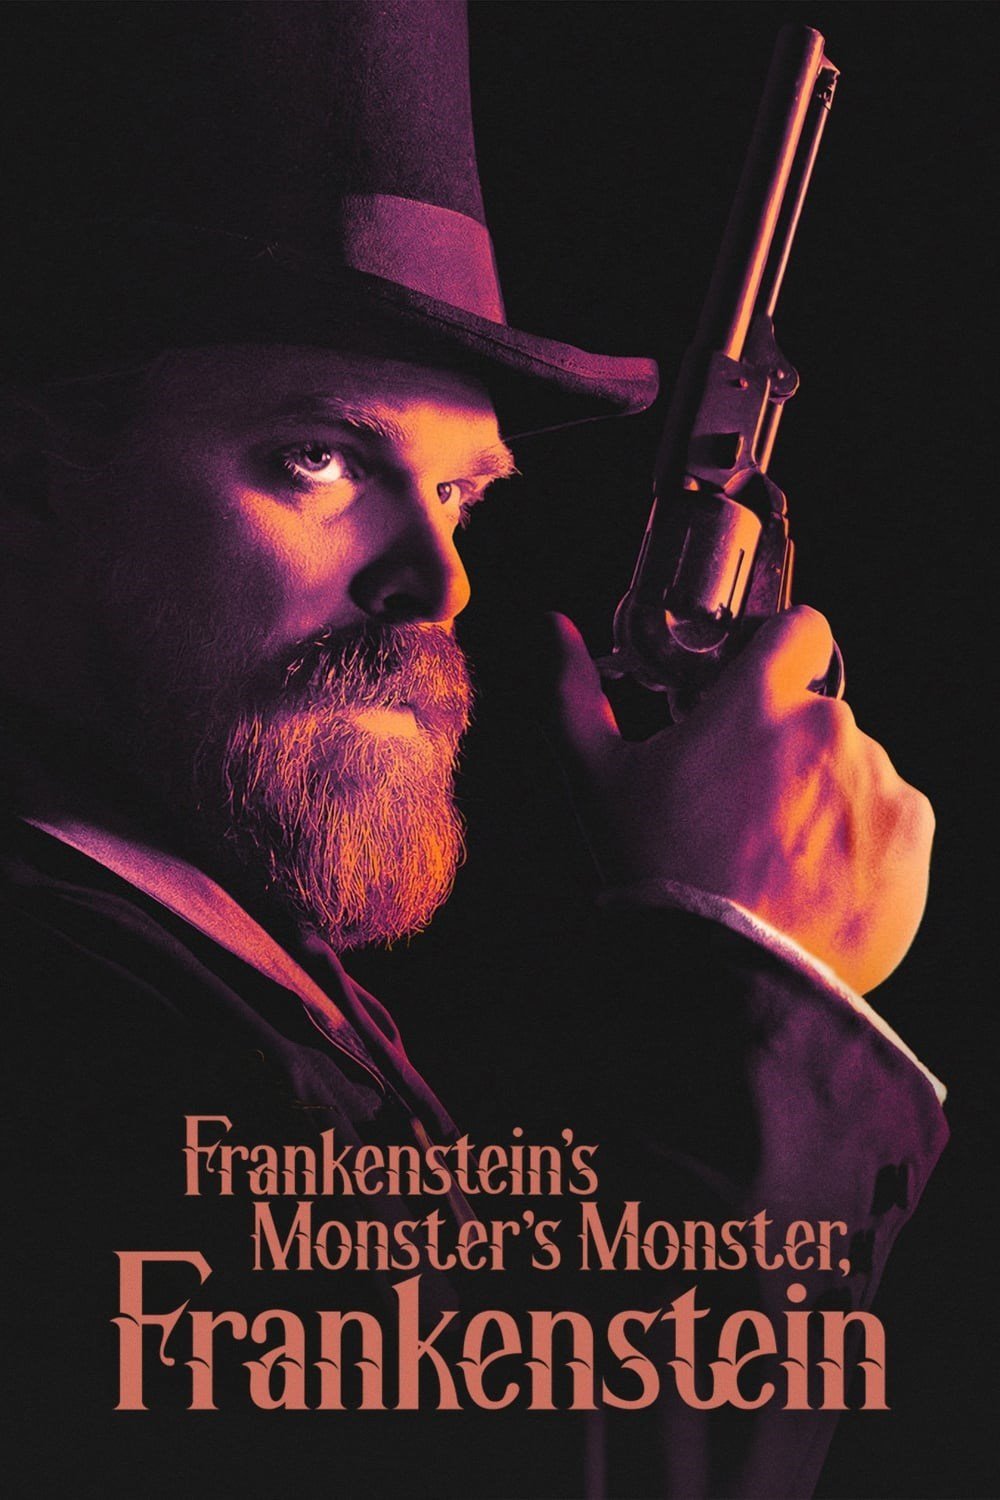 Poster of the movie Frankenstein's Monster's Monster, Frankenstein